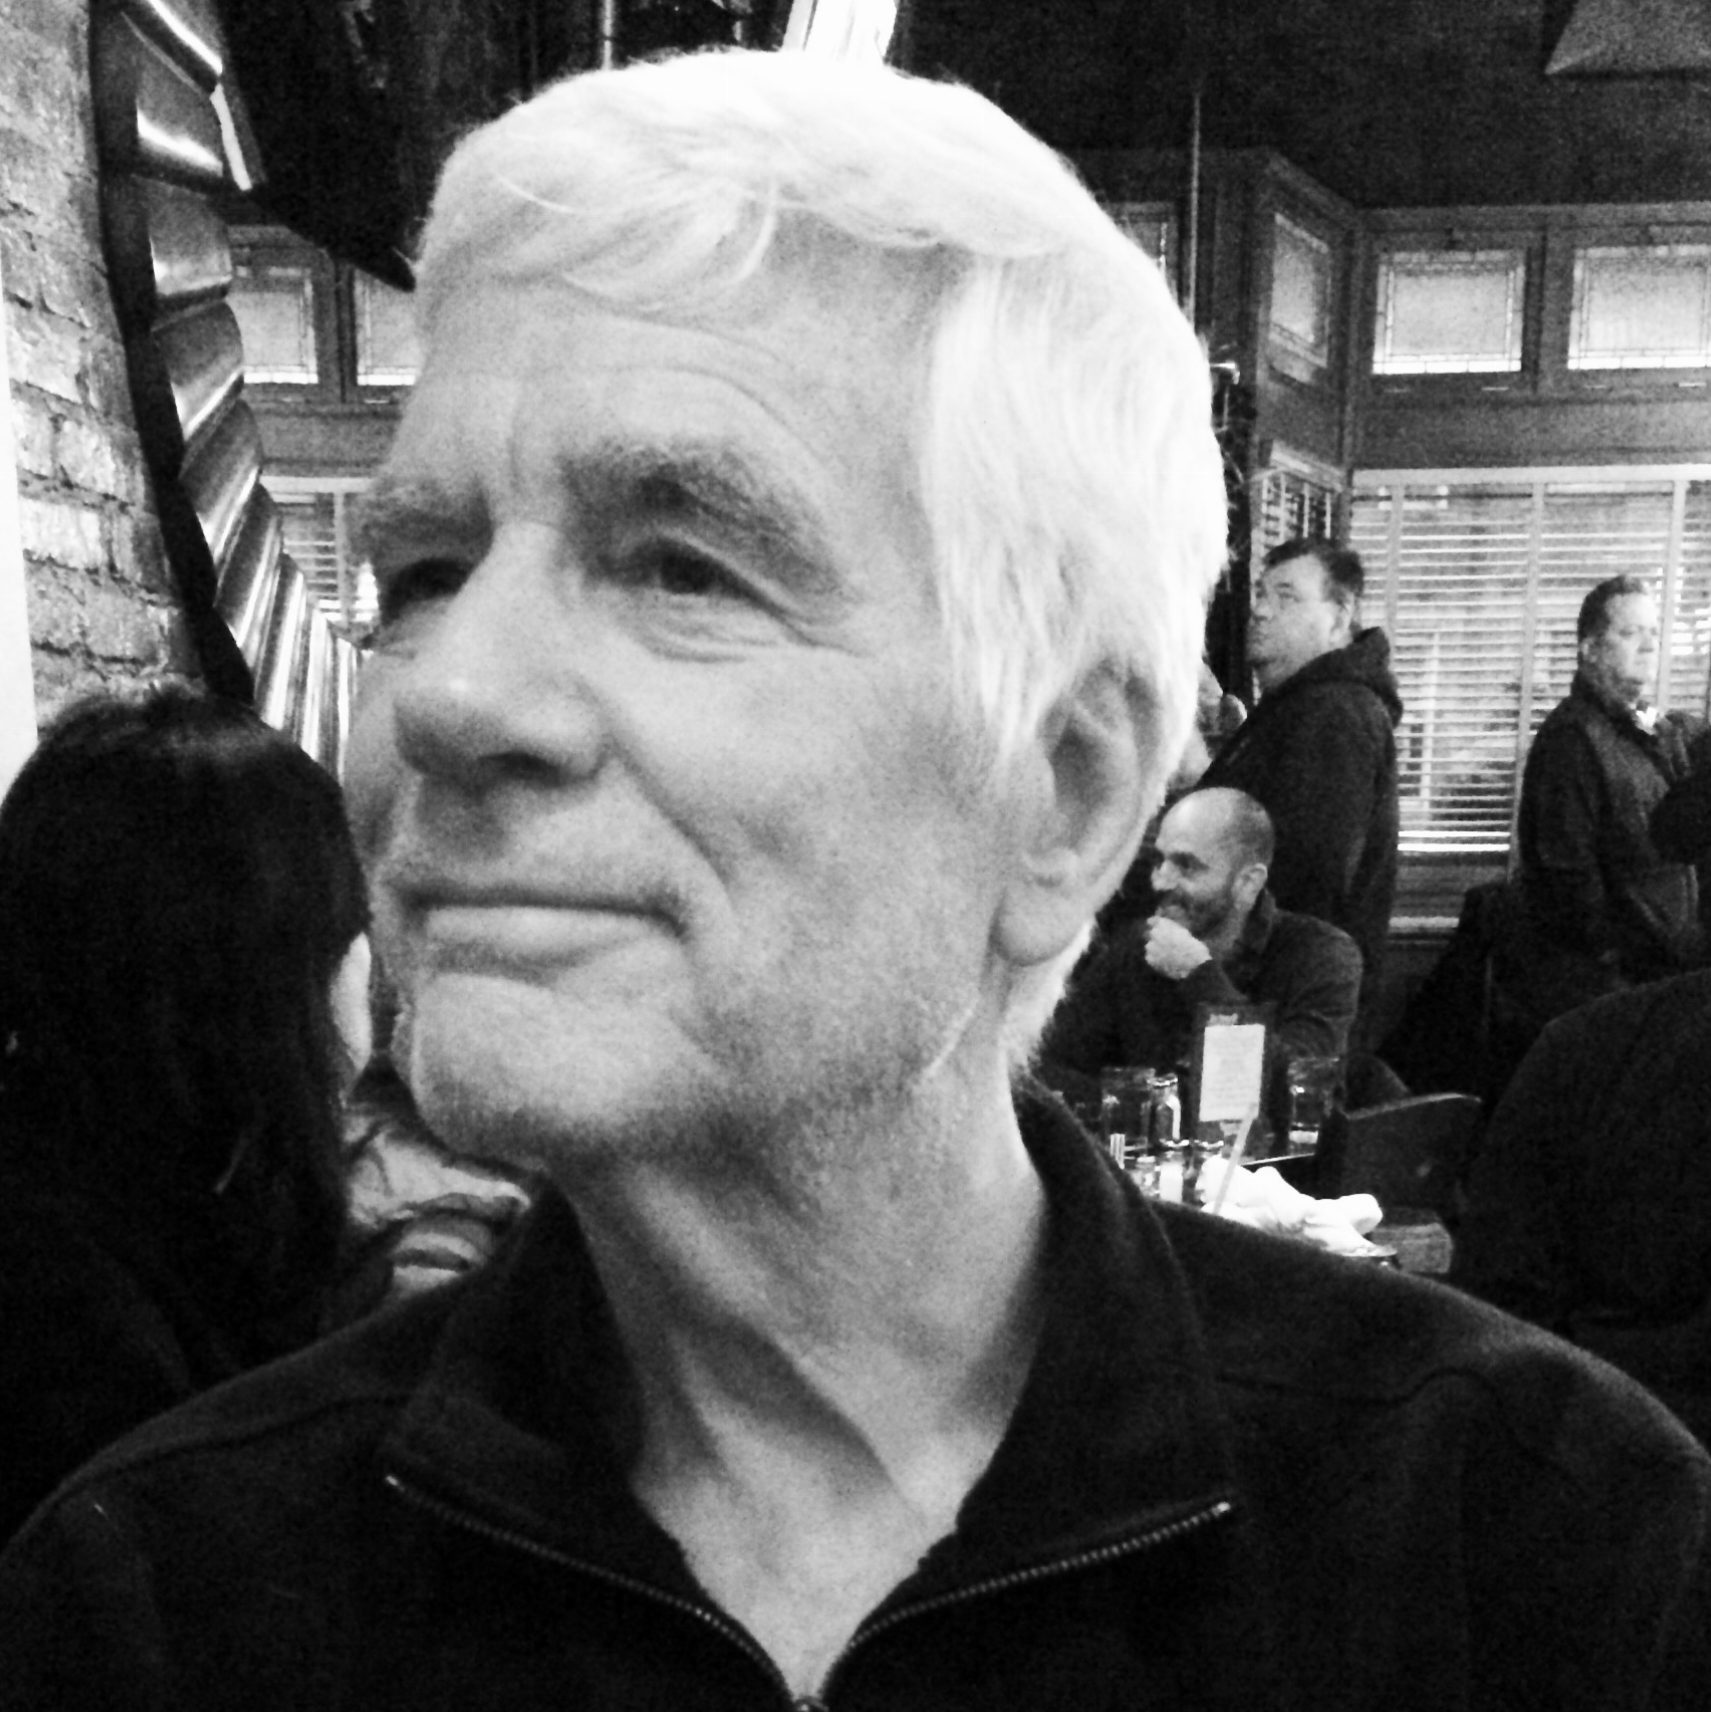 The author's father, Joe Schrobsdorff, at 80. Brooklyn, 2013 (Susanna Schrobsdorff)